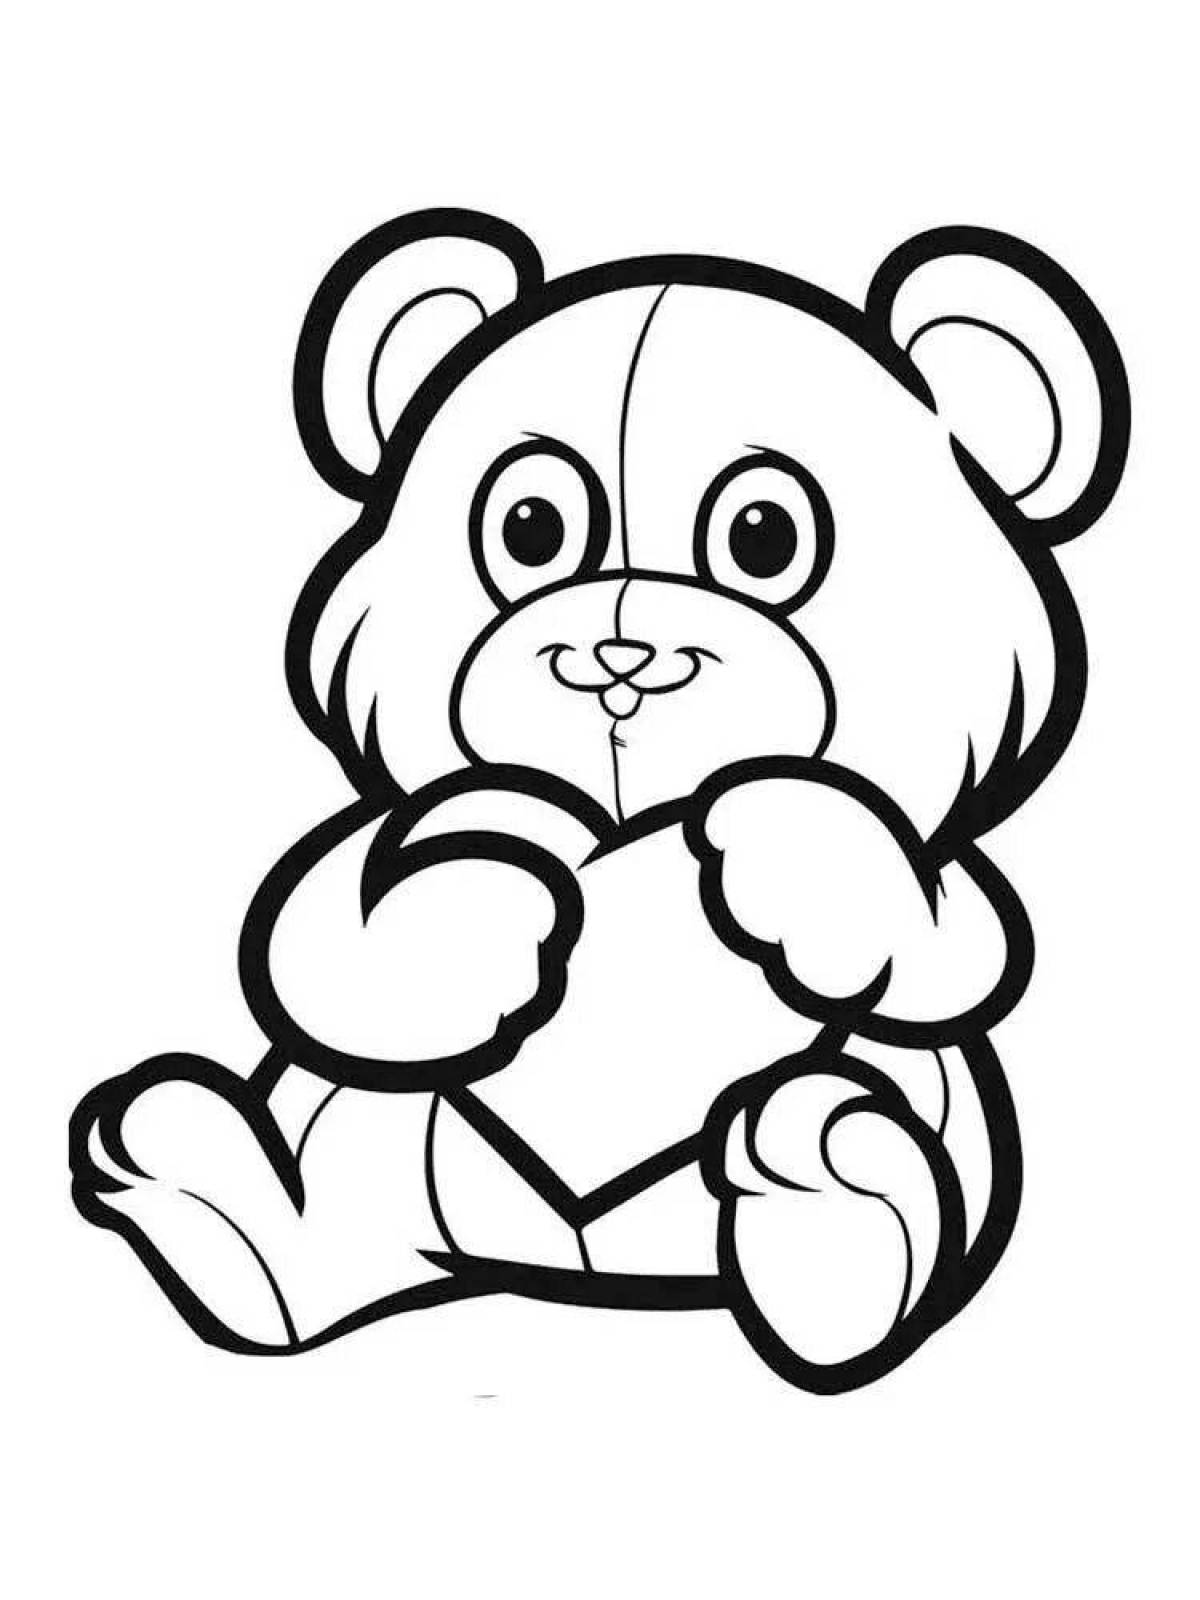 Cute and cute bear coloring book